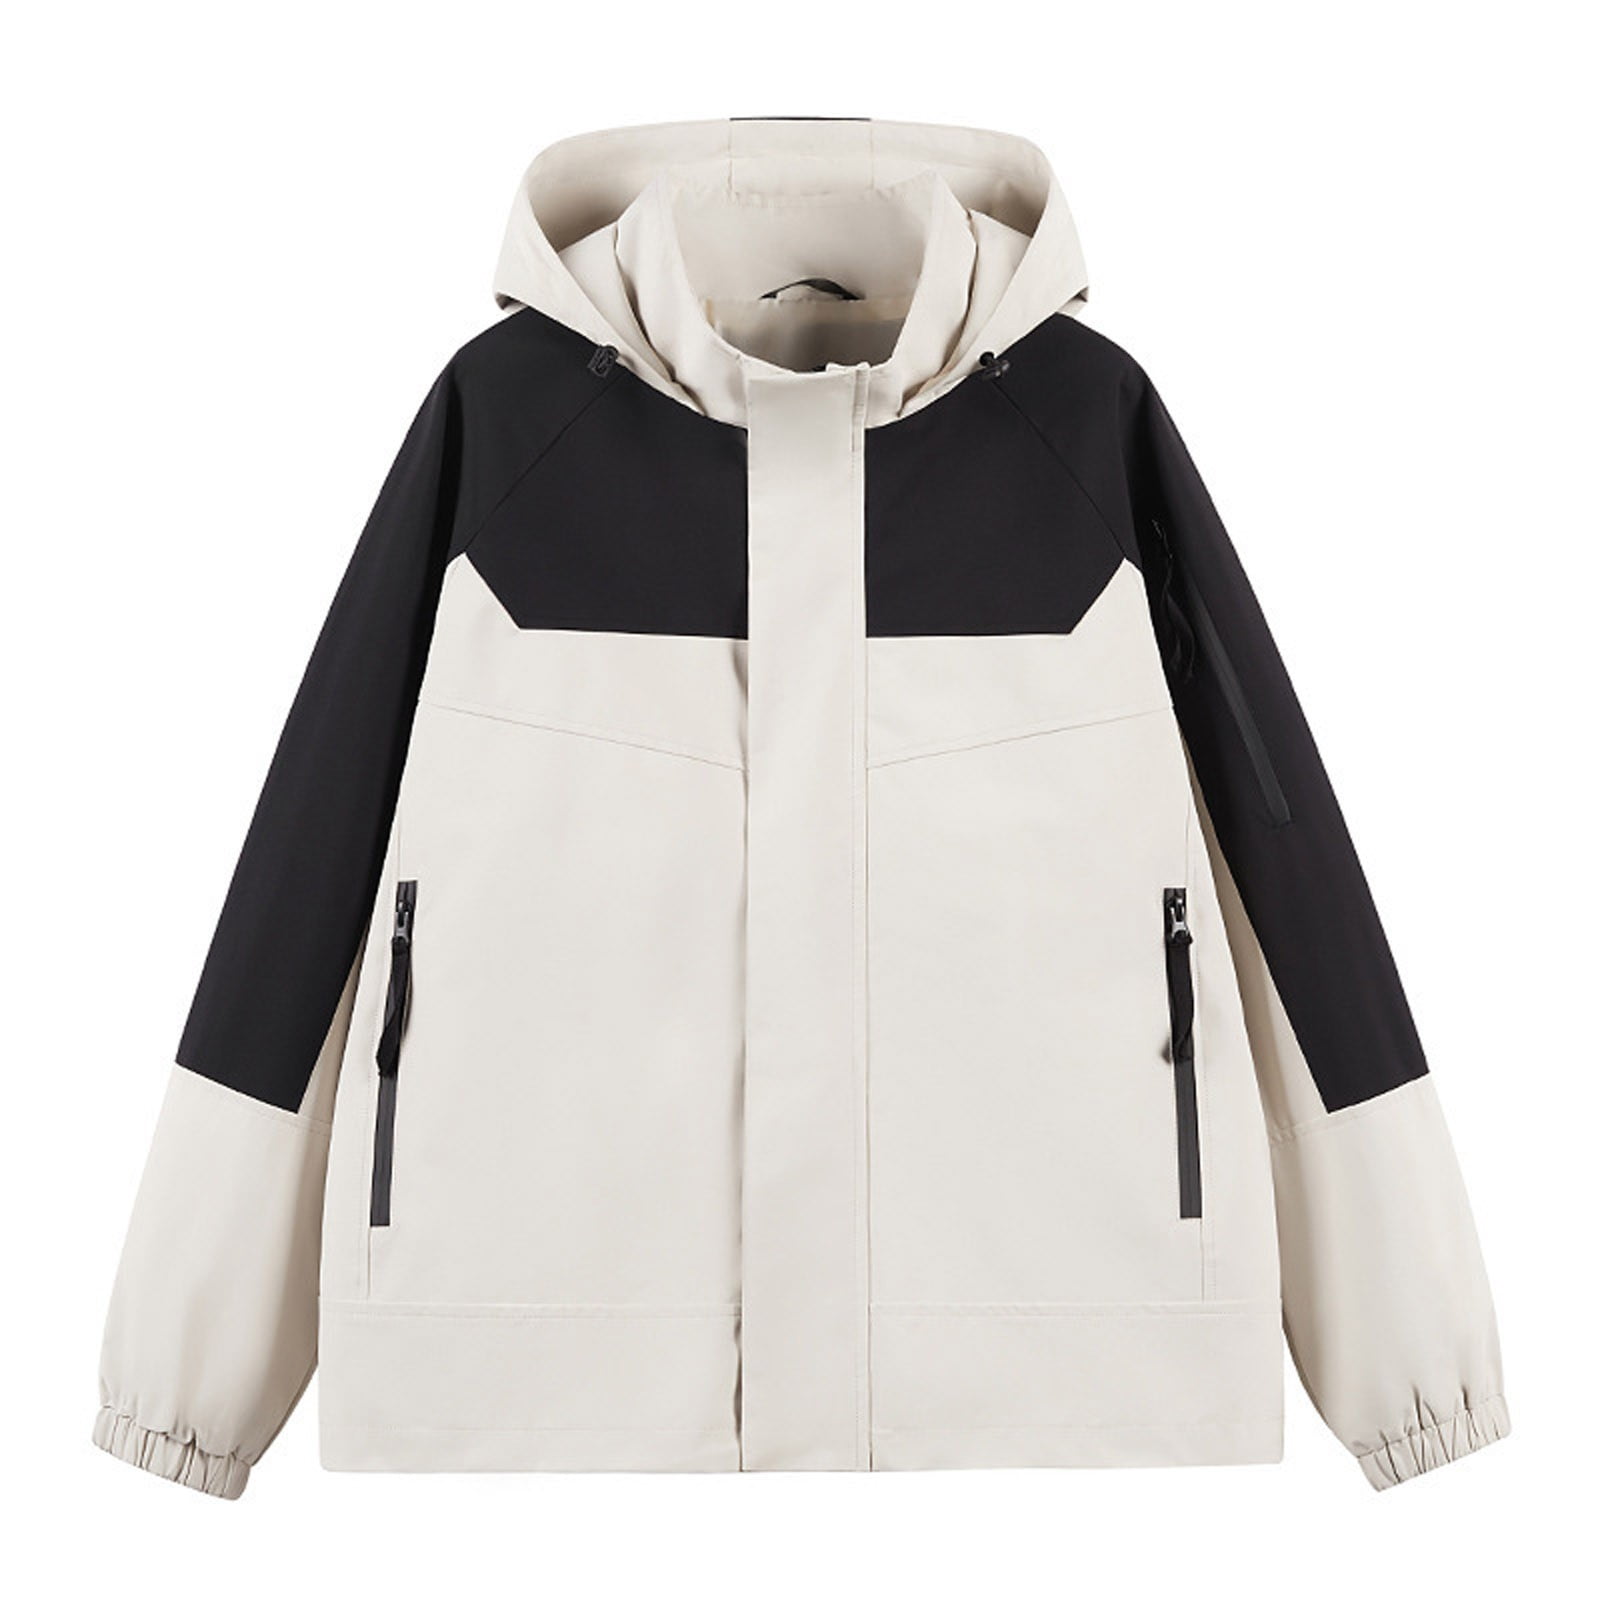 MeetoTime Womens Winter Coats Waterproof with Hood Full Zip Up ...